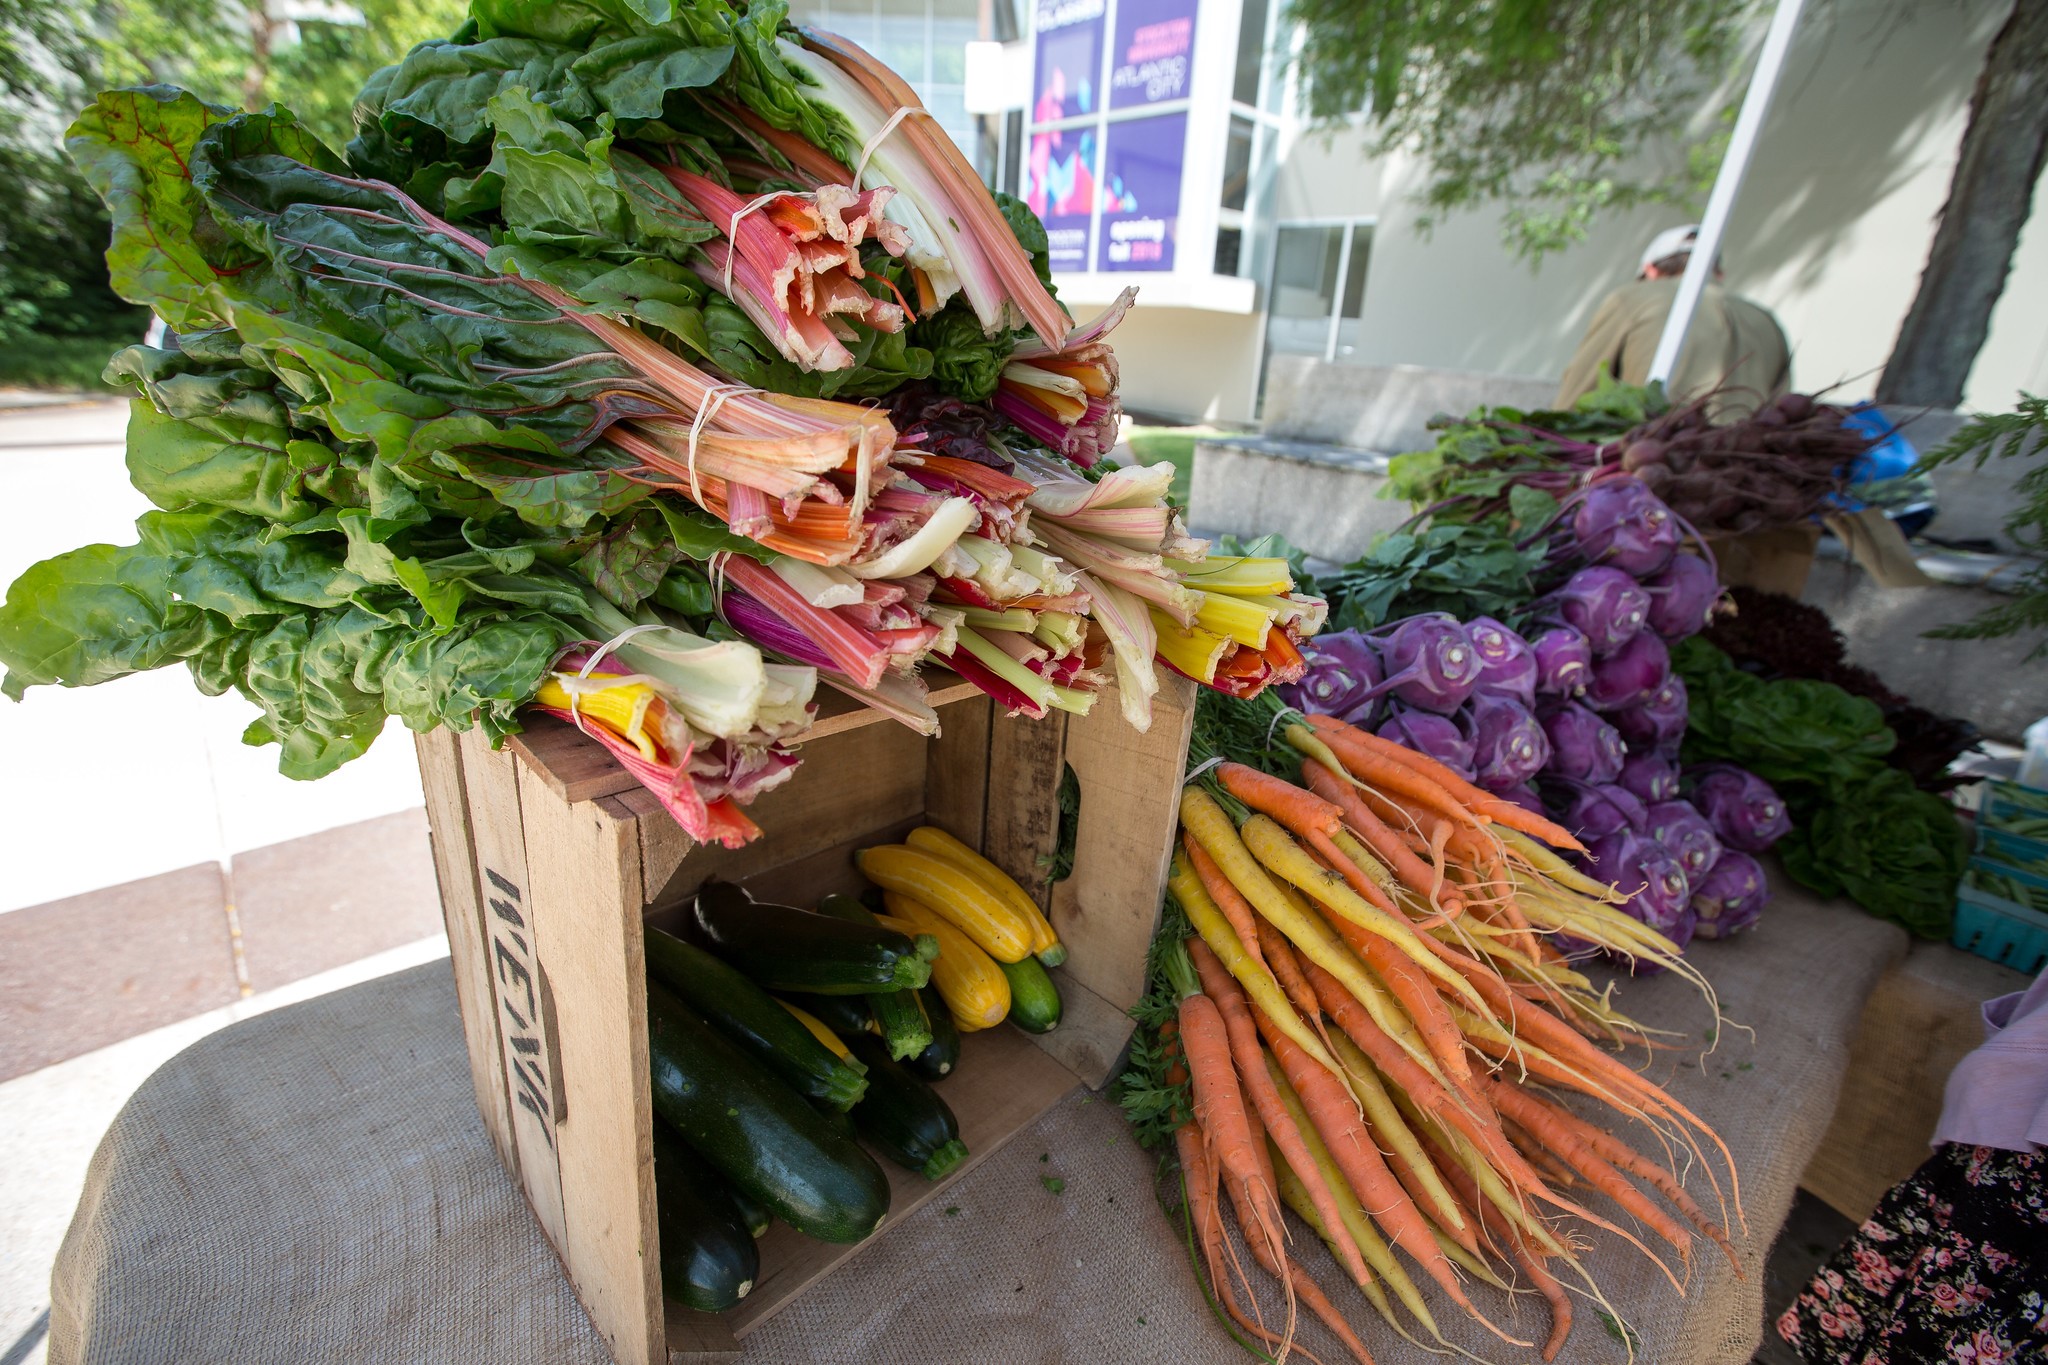 Image of sustainable farm produce